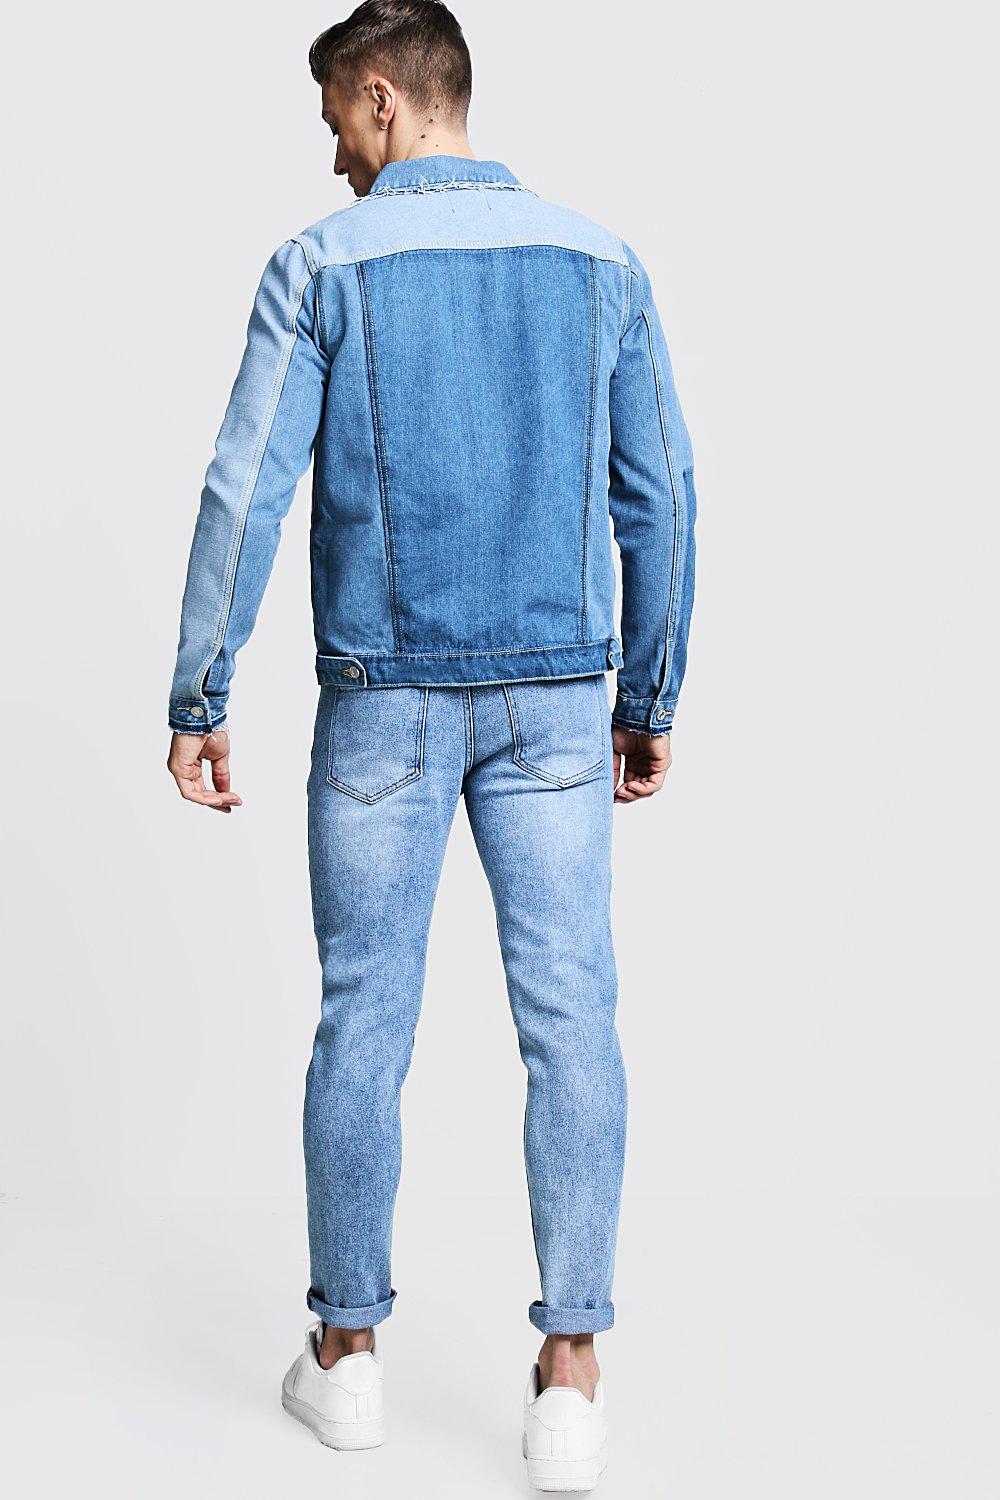 Color Block Patchwork Denim Jacket Men 11XL 10XL Plus Size Jean